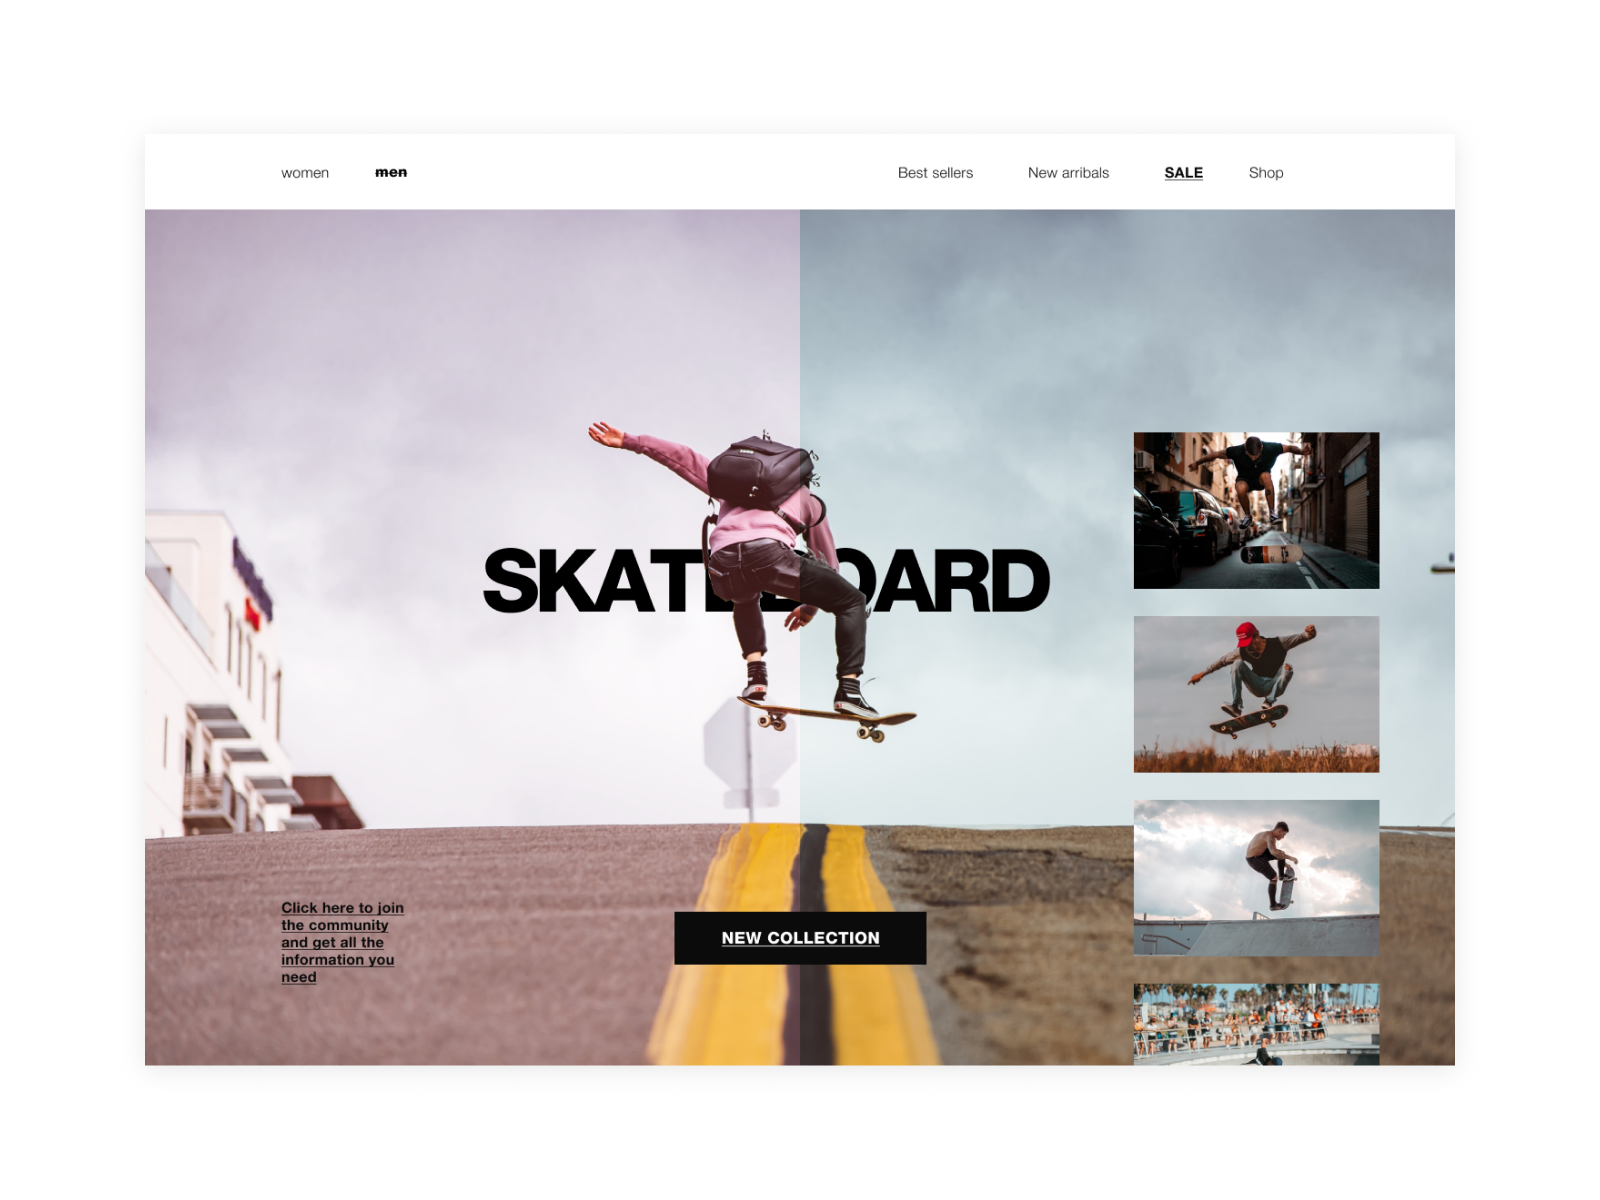 skateboard Off 77%, www.iusarecords.com